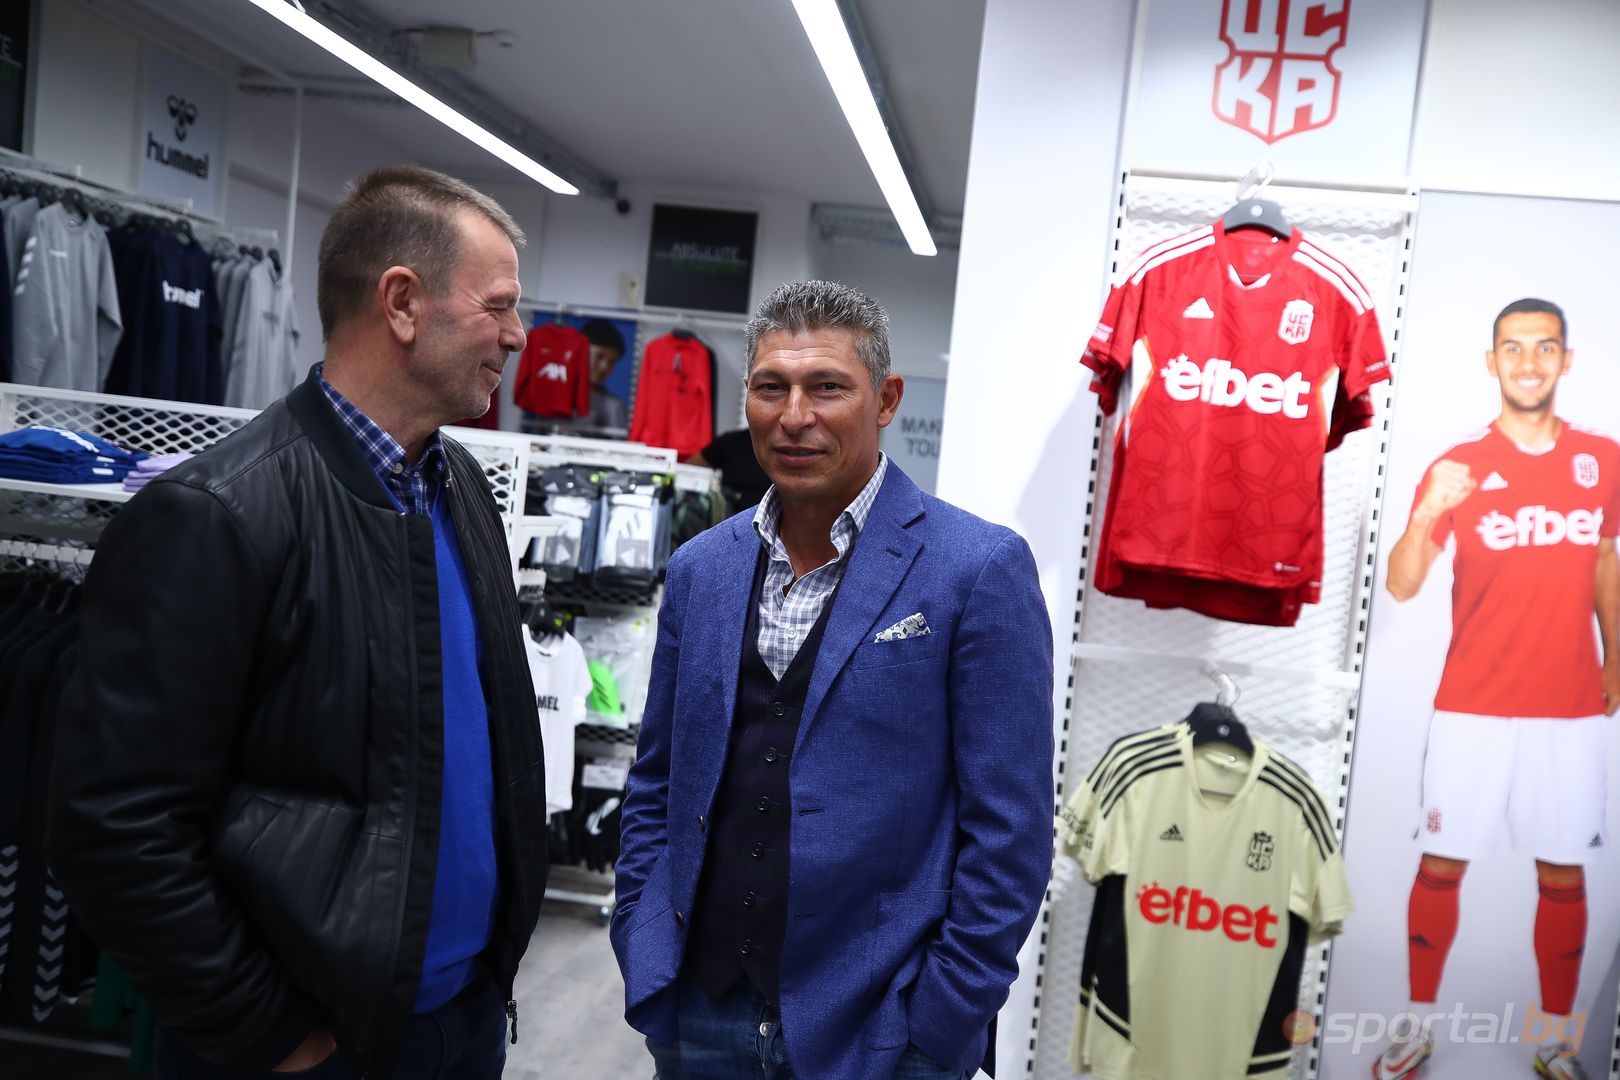 "Sport depot" откриват магазин за футболна екипировка